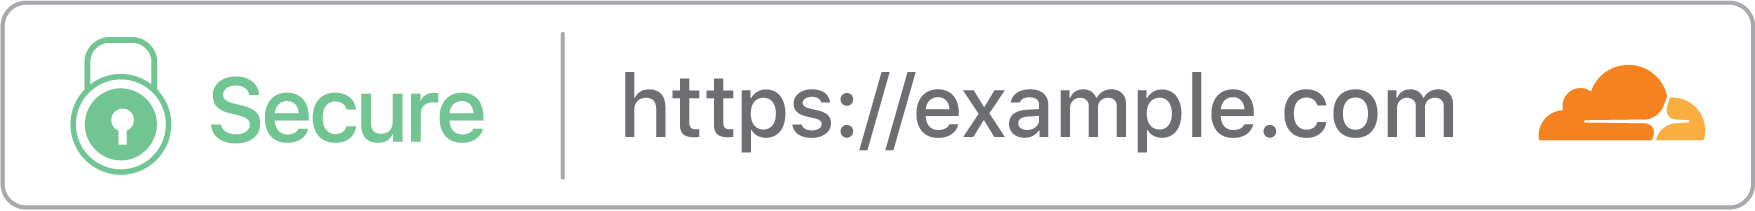 Certificados SSL para vários domínios